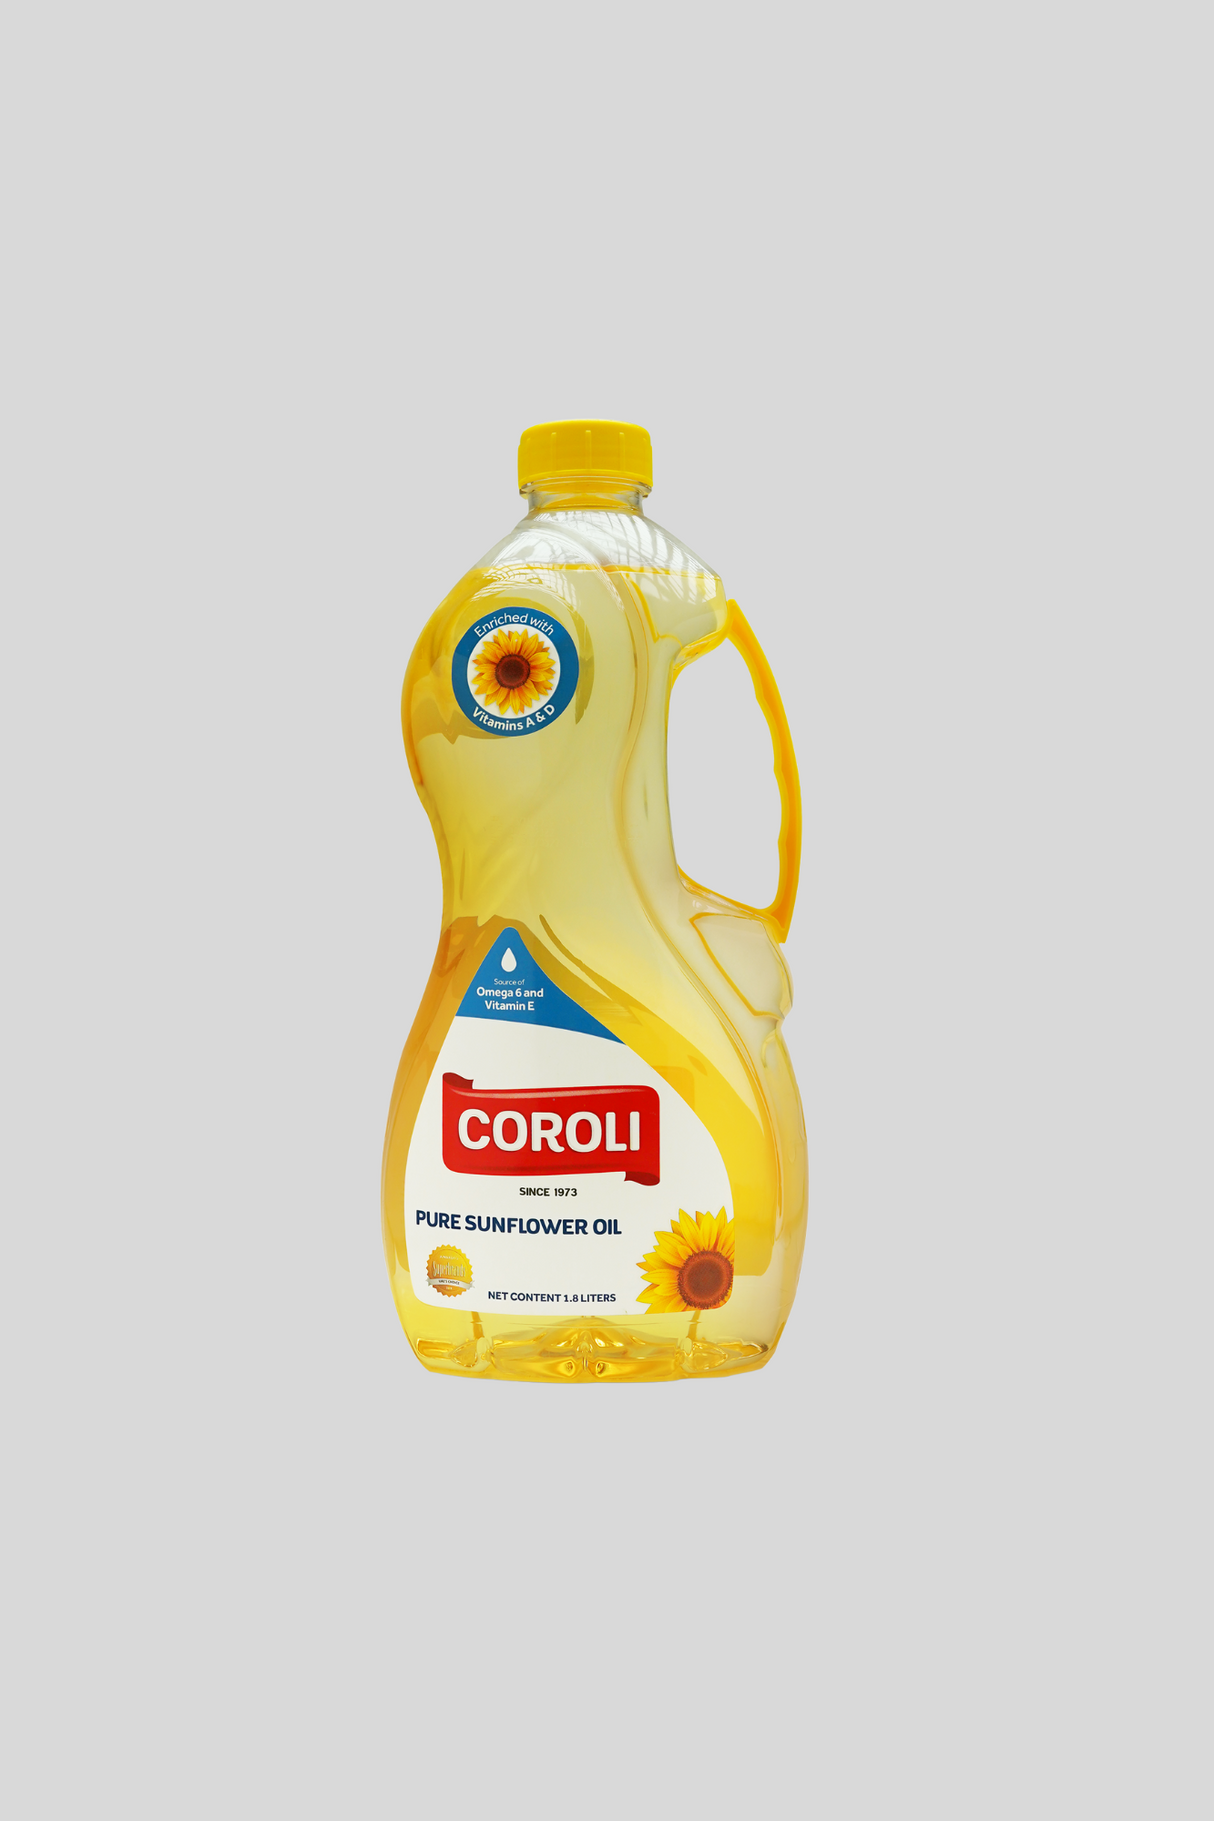 coroli sunflower oil 1.8l